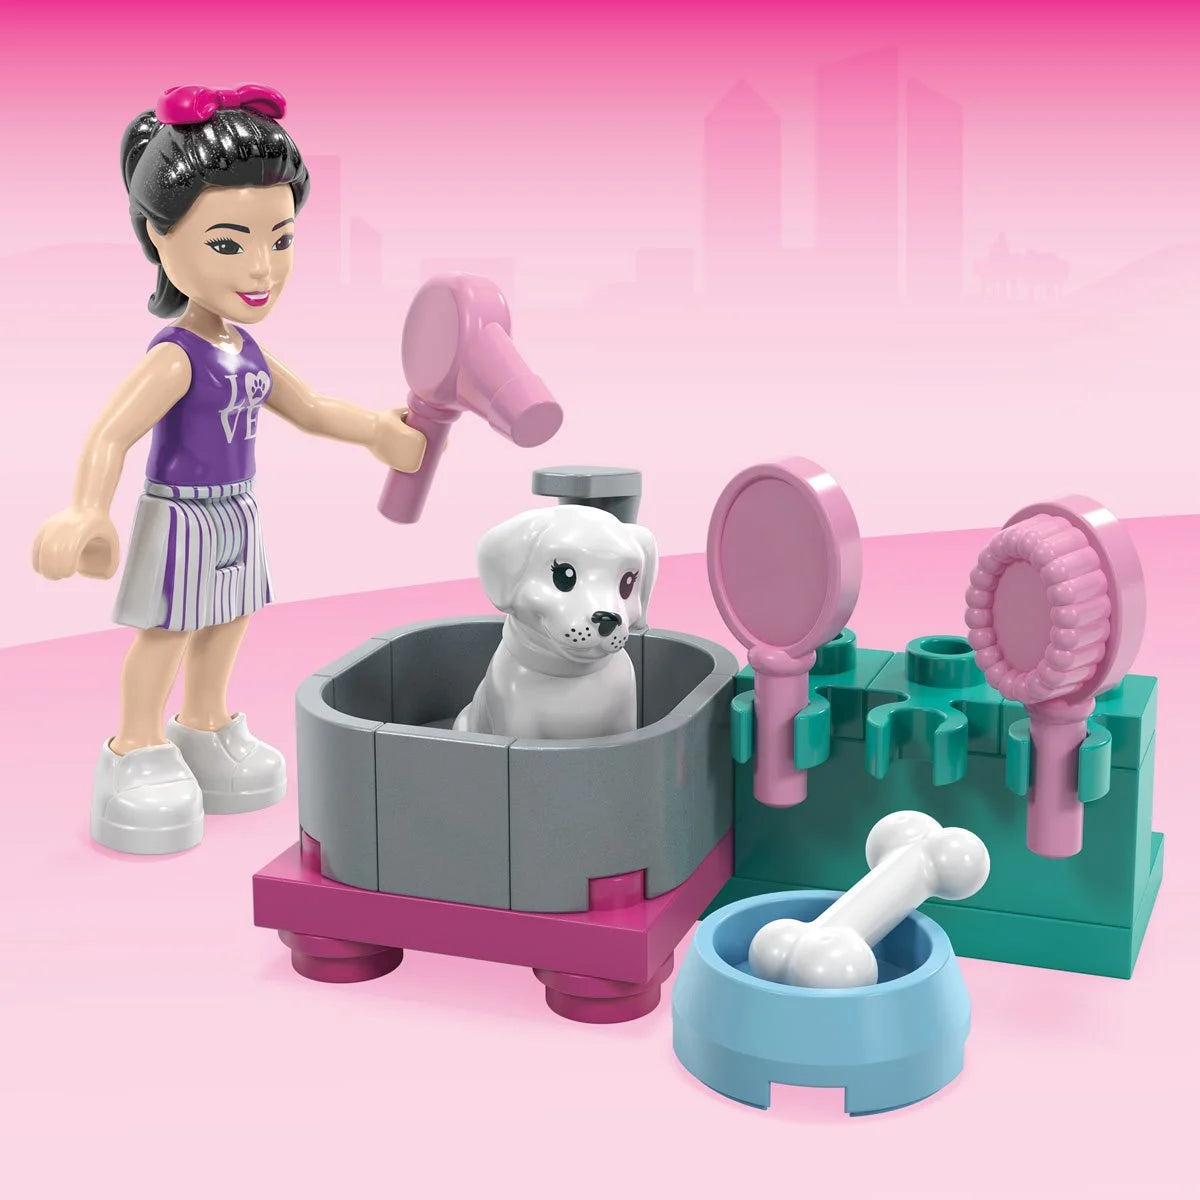 MEGA Construx Barbie Pet Care Playset - Puppy Bath Time